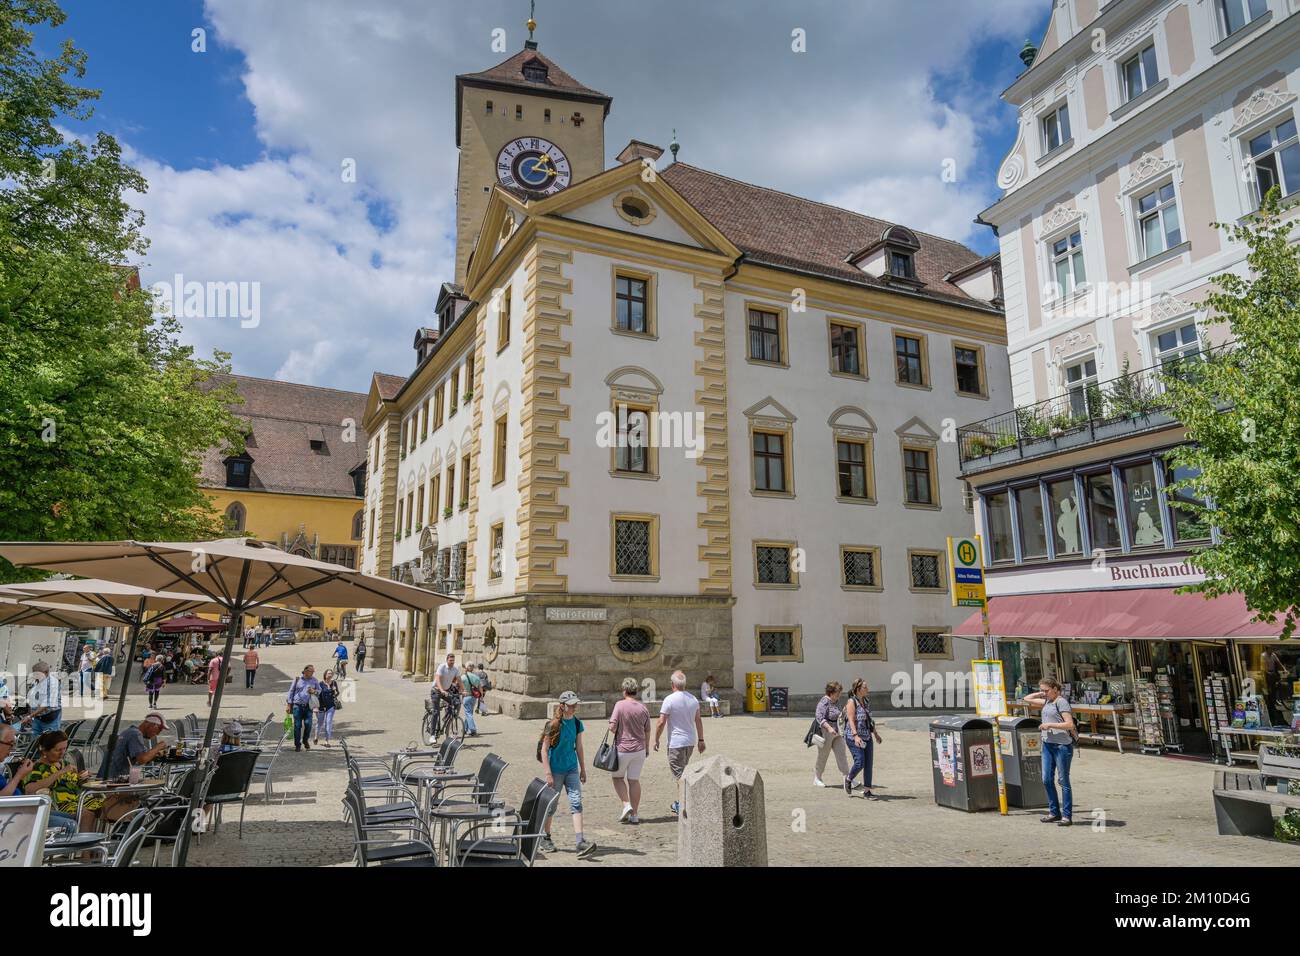 Altes Rathaus, Altstadt, Kohlenmarkt, Regensburg, Bayern, Deutschland Stock Photo